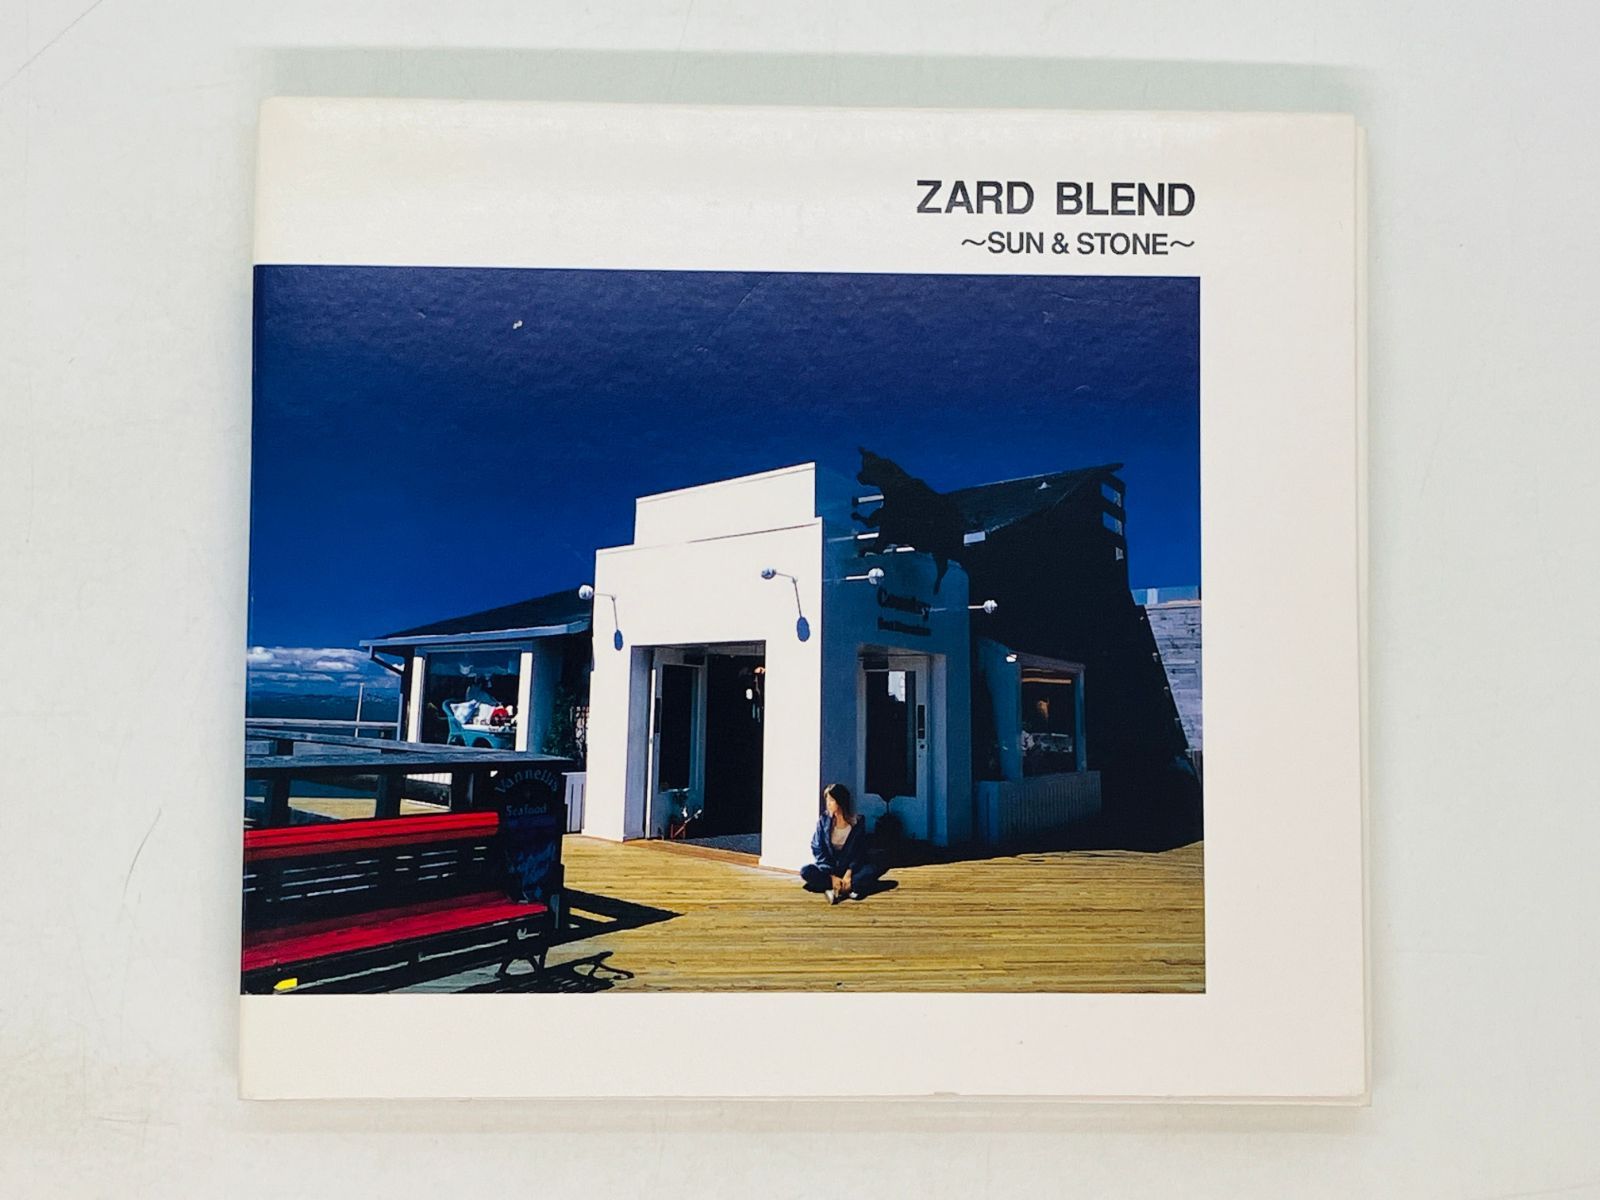 絶版・貴重】ZARD BLEND SUN&STORE オフィシャルバンドスコア - 楽器/器材